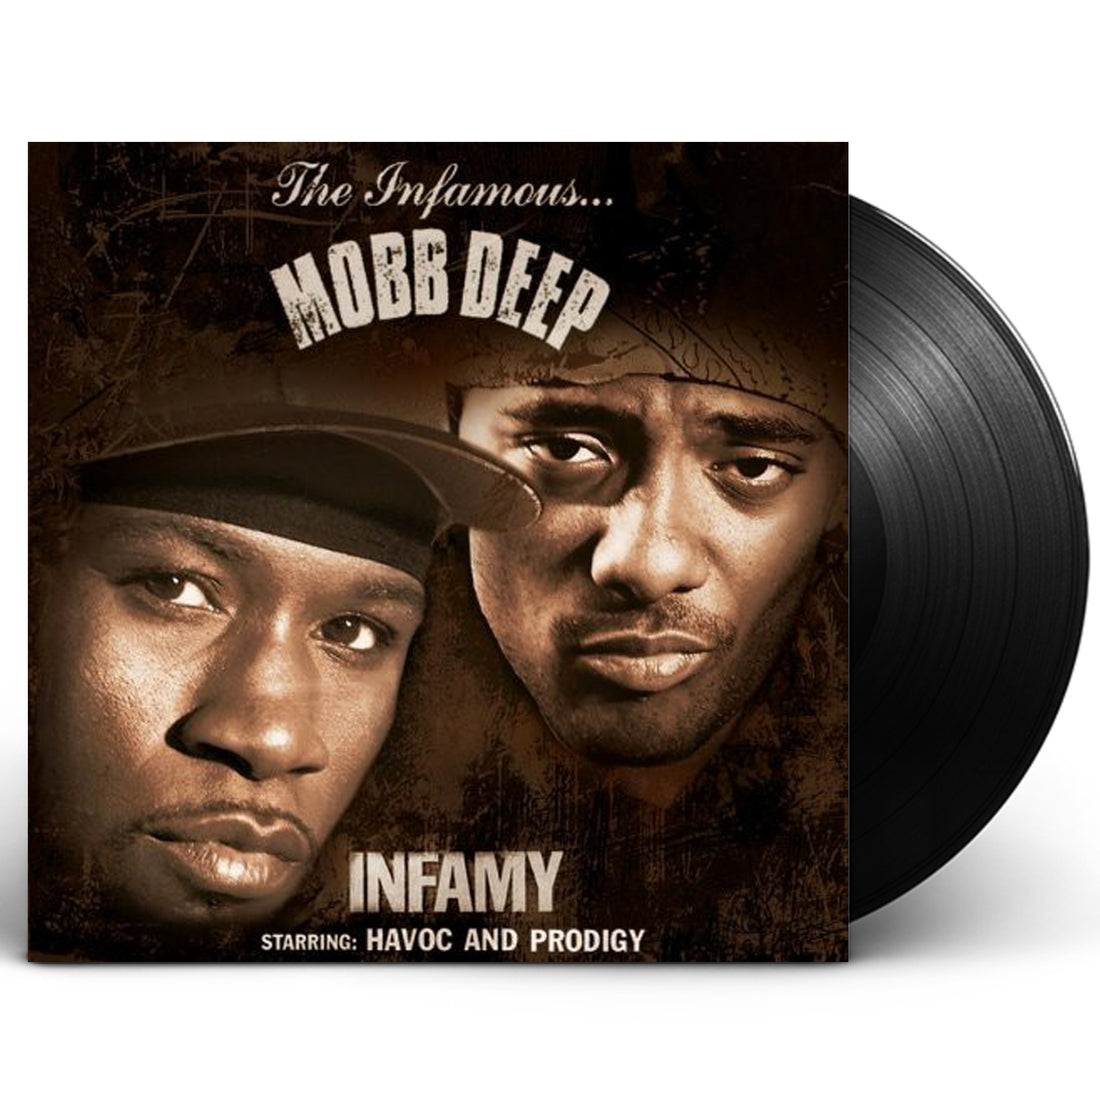 Mobb Deep "Infamy" 2xLP Vinyl